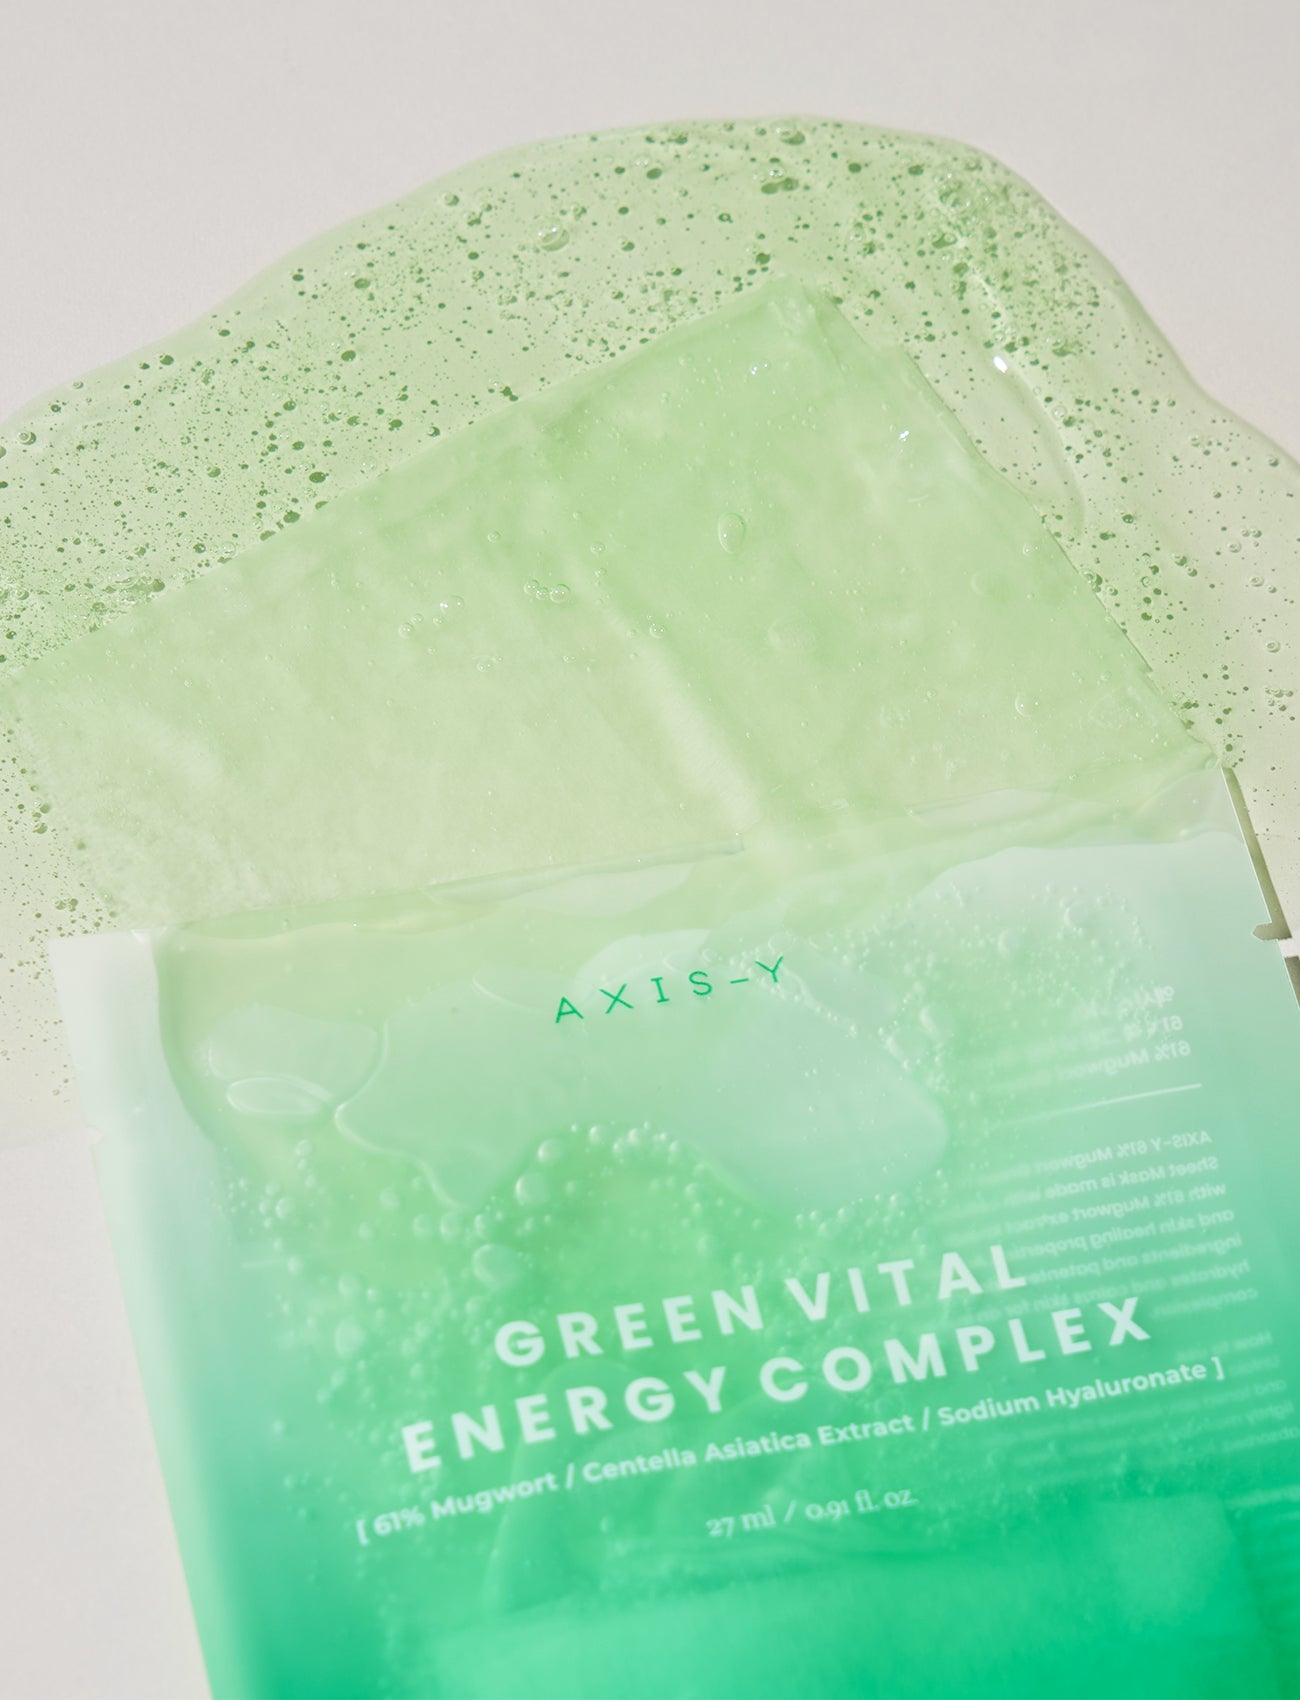 Die AXIS-Y 61% Mugwort Green Vital Energy Complex Sheet Mask läuft aus der Verpackung heraus und die Textur der Maske ist zu sehen.